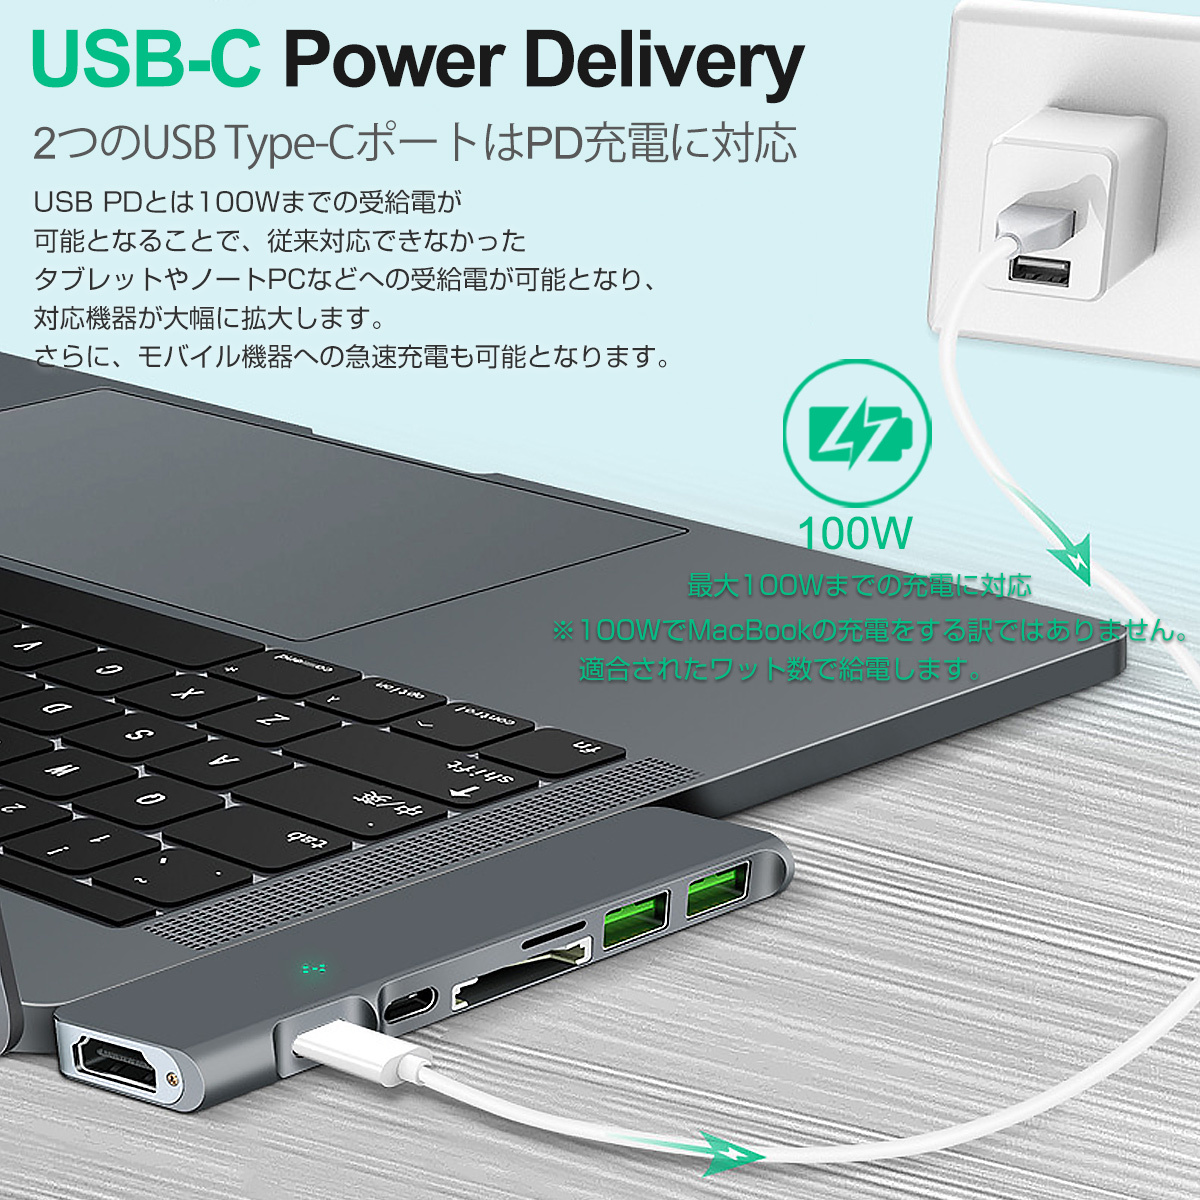 USB Type-C ハブ 7in1 USB3.0x2 4K HDMI 1Gbps有線LAN PD充電 microSD